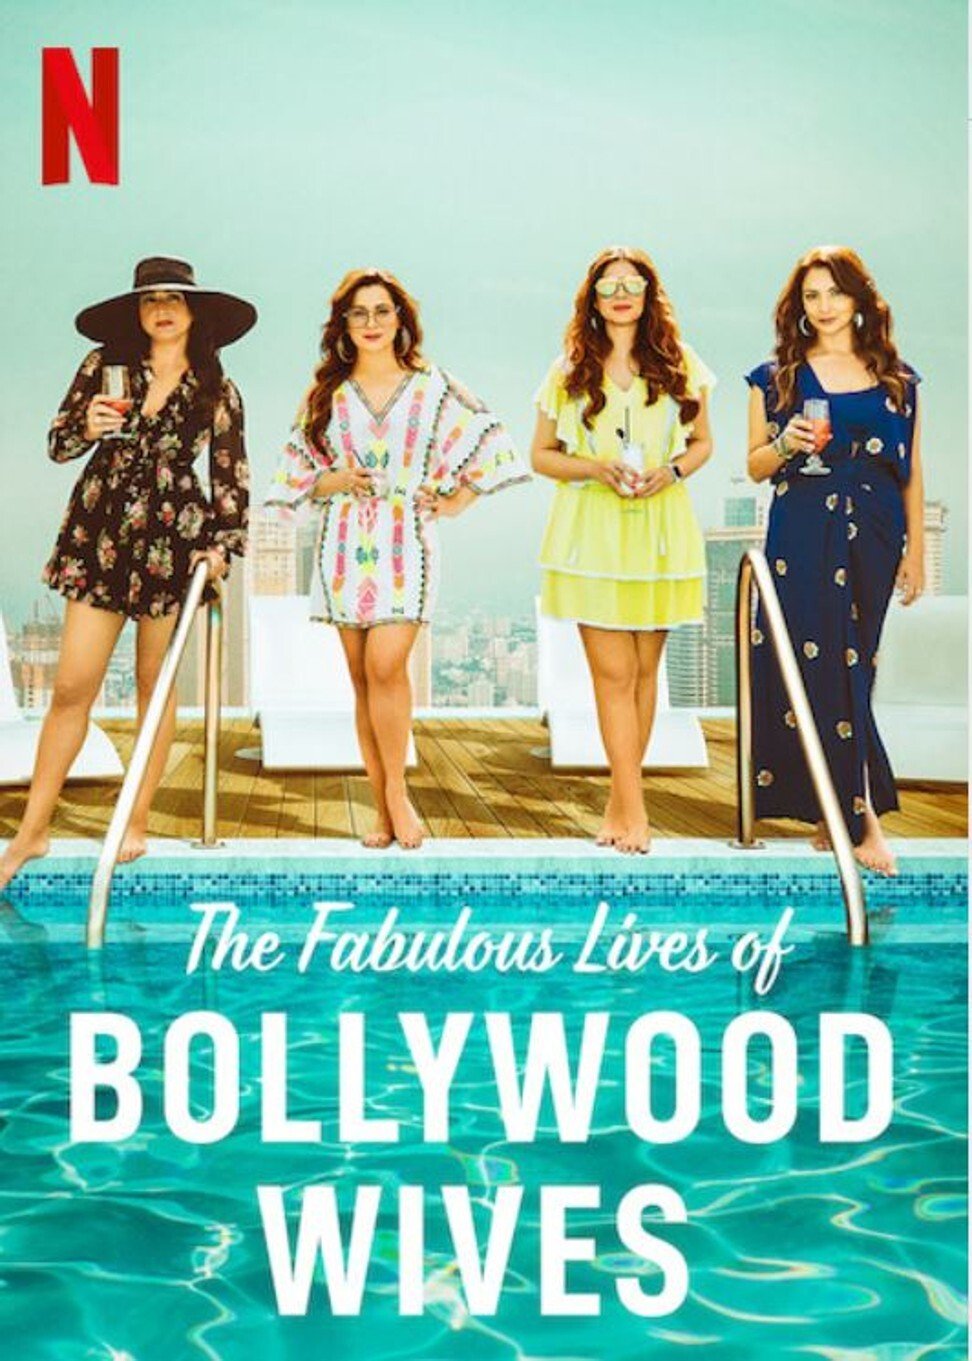 ดูหนังออนไลน์ฟรี Fabulous Lives of Bollywood Wives Season 1 Ep06 แฟบูลูส ไลฟ์ ออฟ บอลลีวู๊ด ไวส์ท ปี1 ตอนที่6